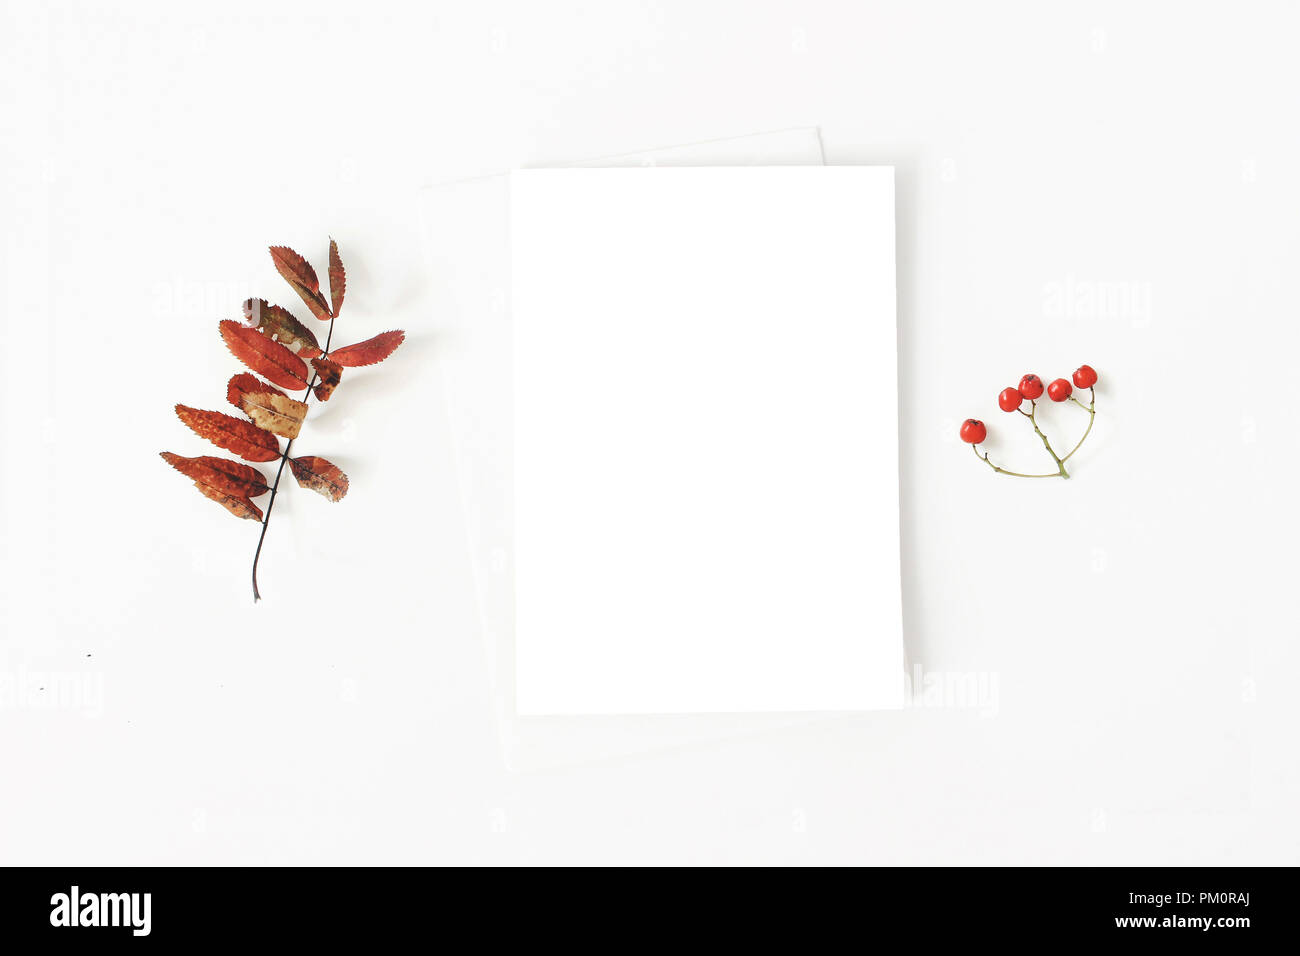 Herbst minimalistischen Schreibwaren mockup Szene. Zusammensetzung der Plank Papier Grußkarte, Umschlag und Rote trockene Rowan Blätter und Beeren auf weißem Hintergrund. Flach, Ansicht von oben. Botanische Anordnung. Stockfoto